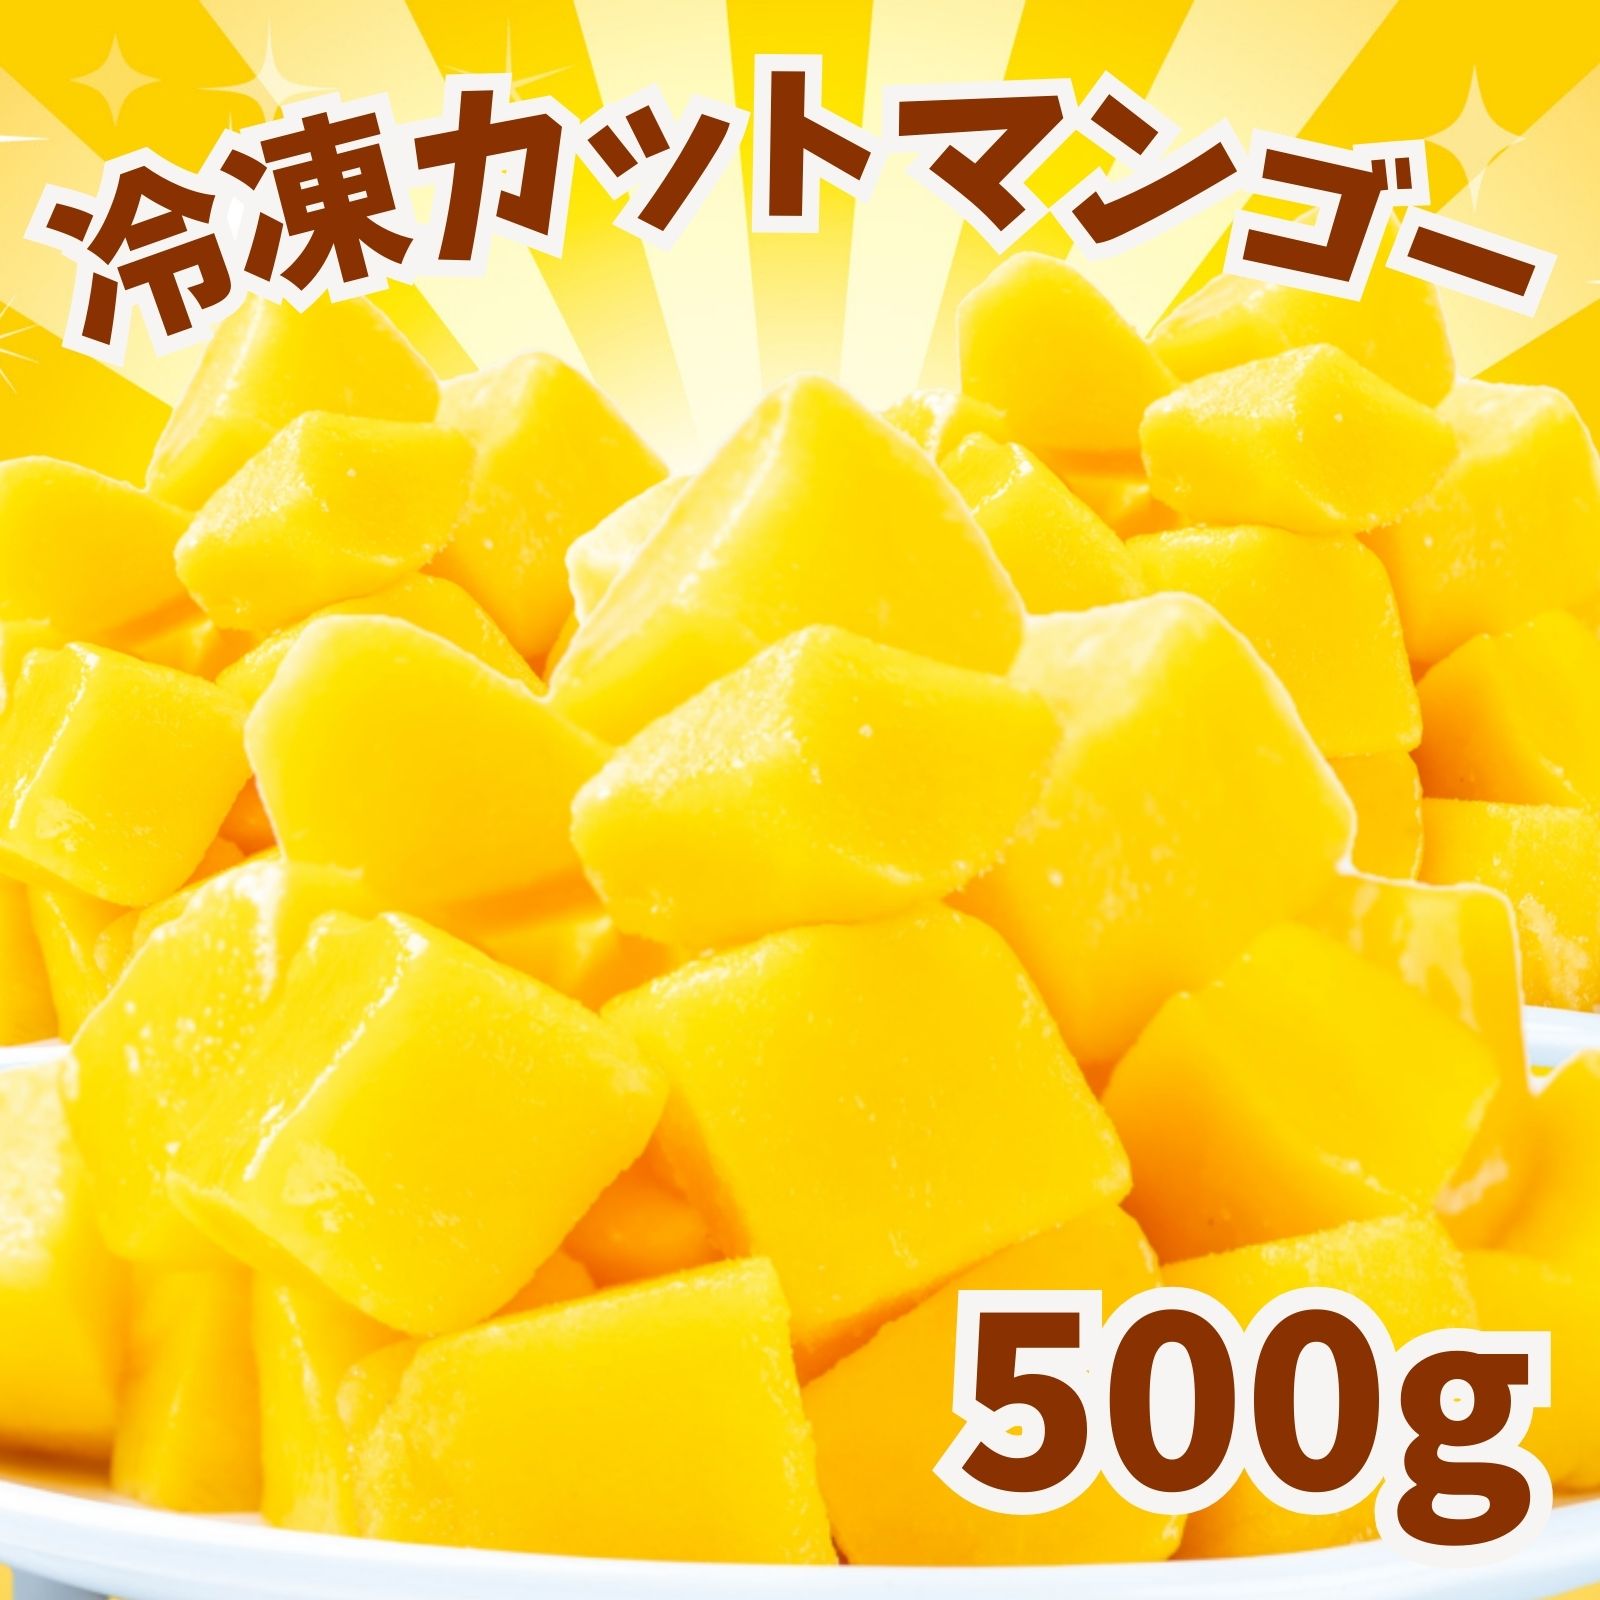 冷凍マンゴー 500g 業務用 カット済み アップルマンゴー 冷凍フルーツ 冷凍 マンゴー 砂糖不使用 無添加